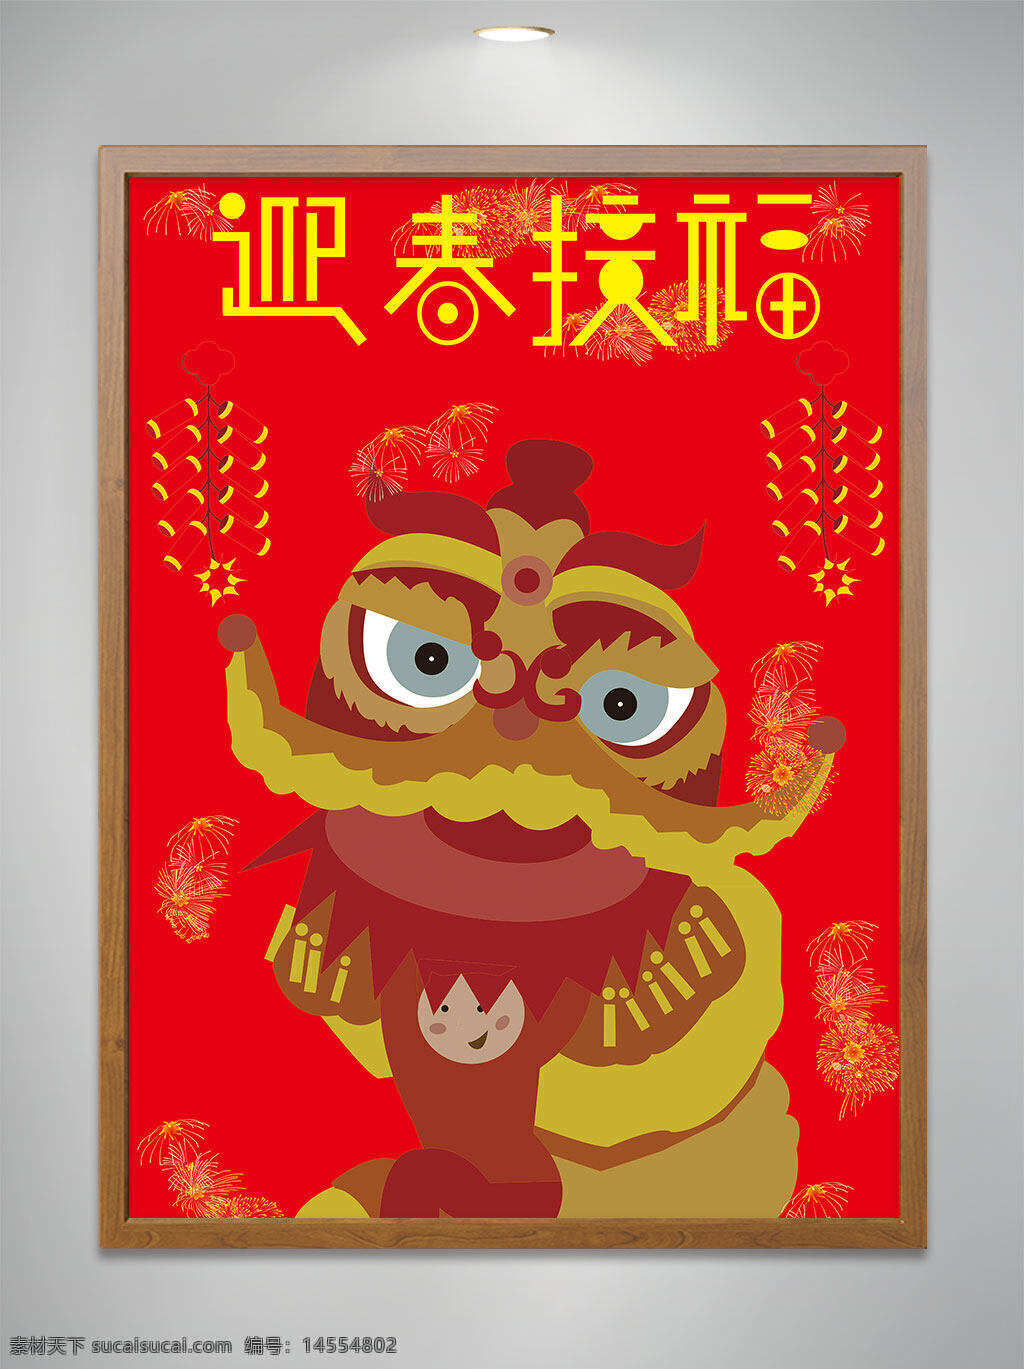 平面 广告 新春 节日 海报 红色 鞭炮 狮子 卡通 插画 字体 设计